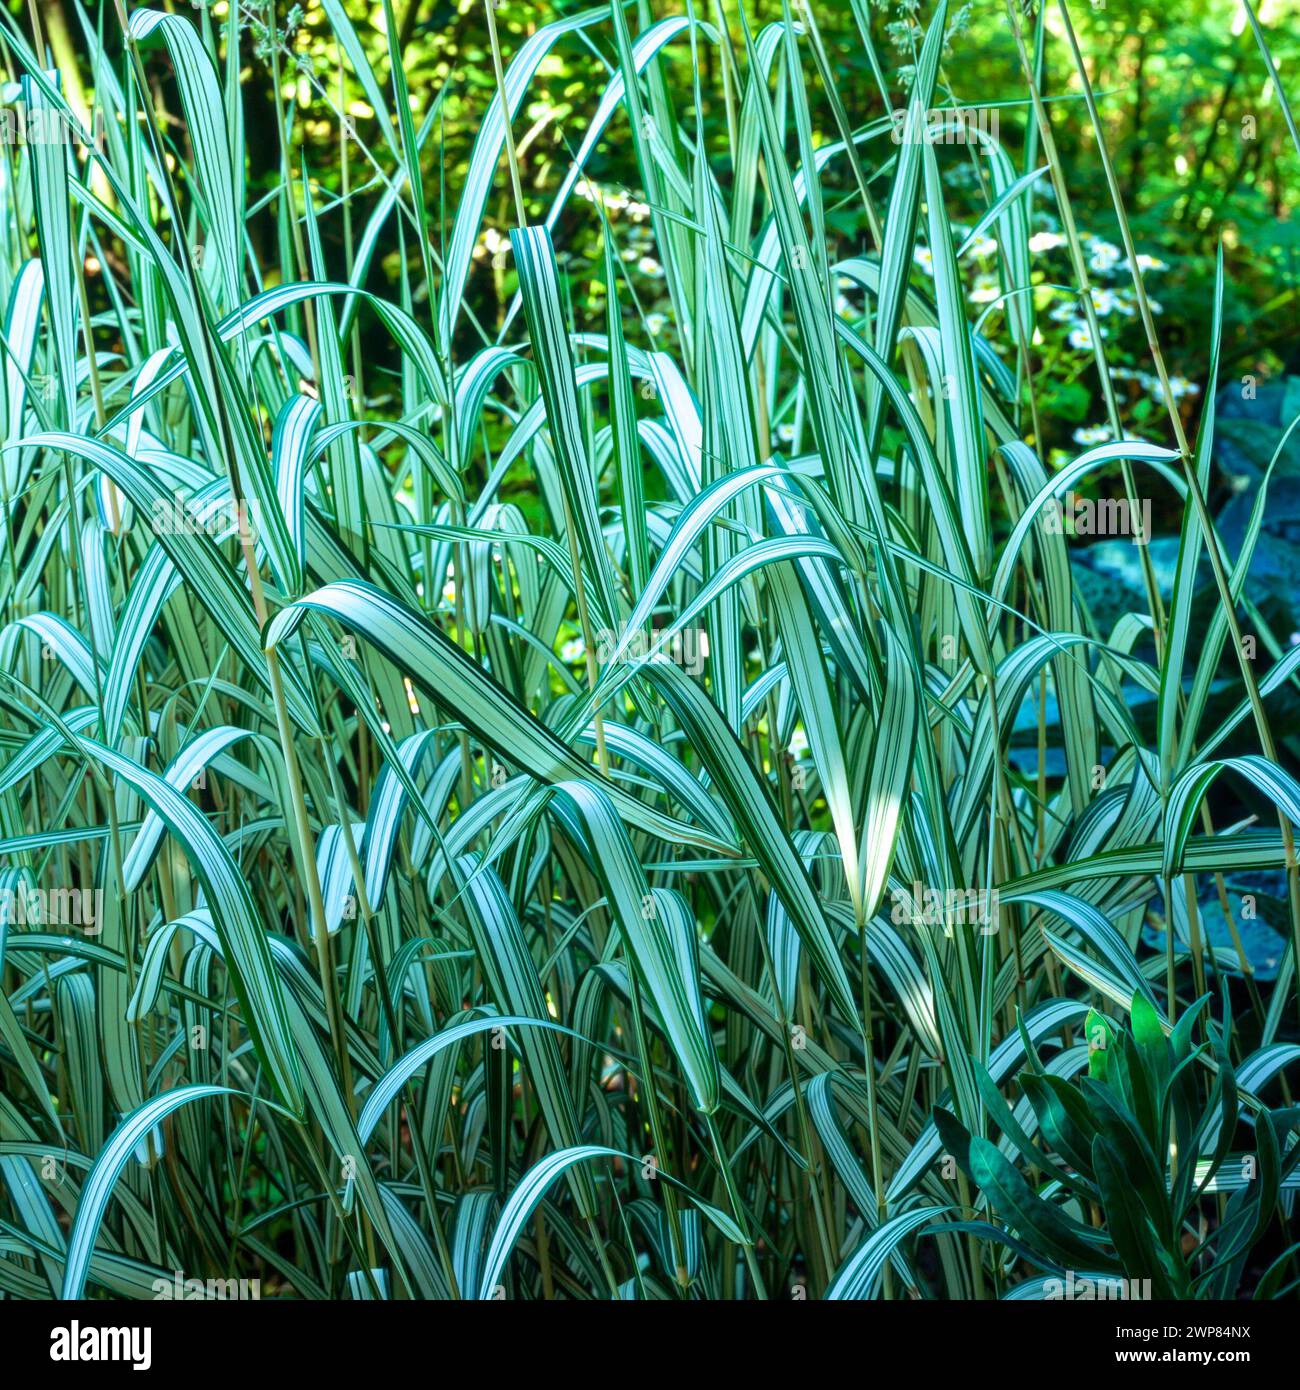 Foglie verdi variegate e a strisce di Phalaris arundinacea "Feesey", fiocco / erba canarina di canna che cresce nel giardino inglese, Inghilterra, Regno Unito Foto Stock